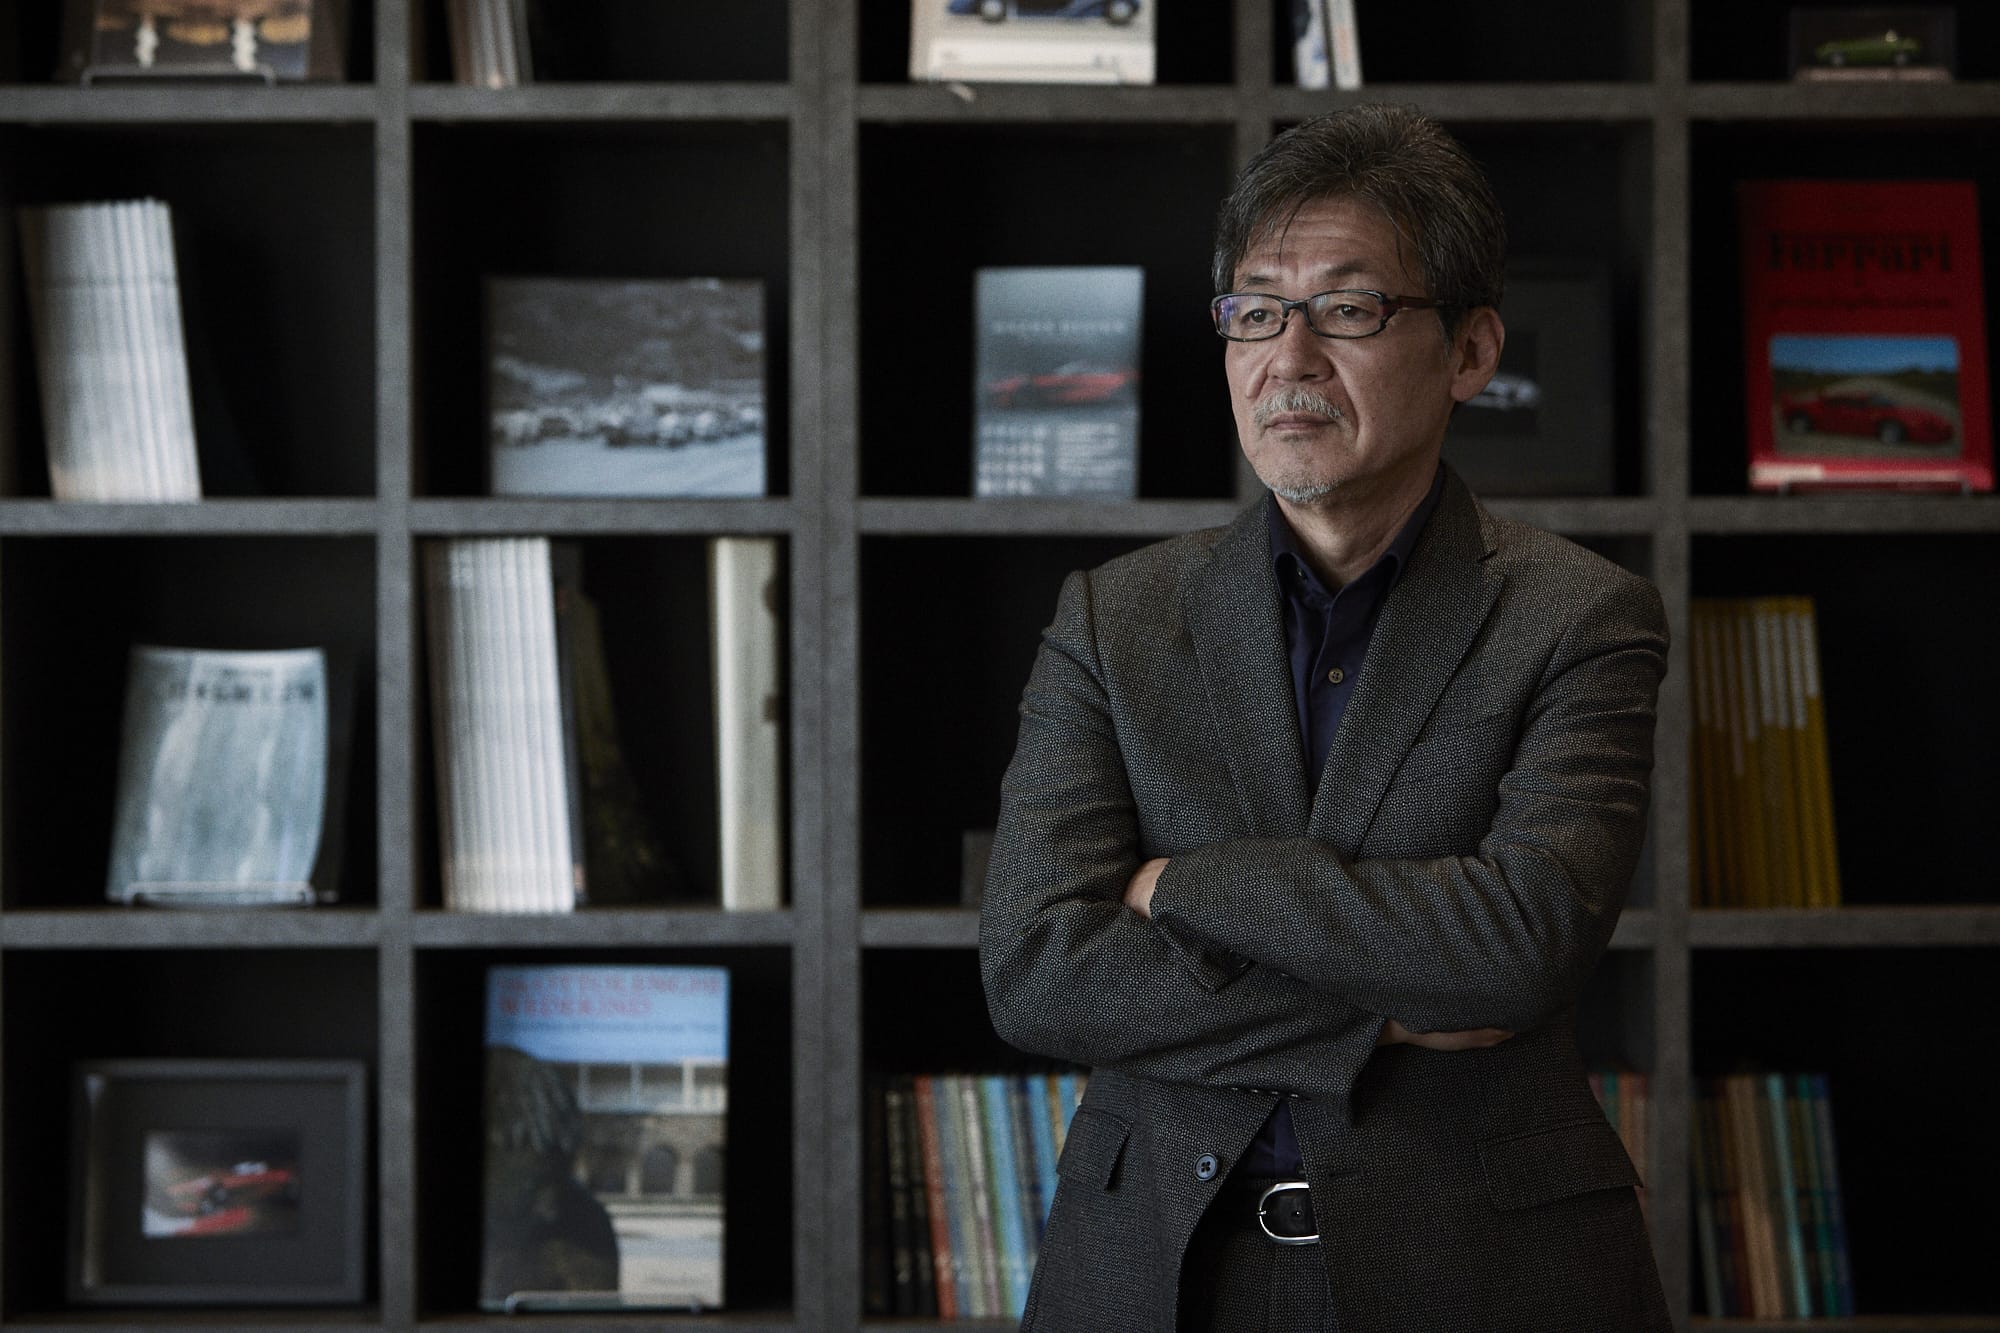 2019年10月31日公開しているPremium Japan「MAZDA～デザインで世界を変える（前編）」より。前田育男   Ikuo Maeda     マツダ株式会社　常務執行役員 デザイン ブランドスタイル担当。